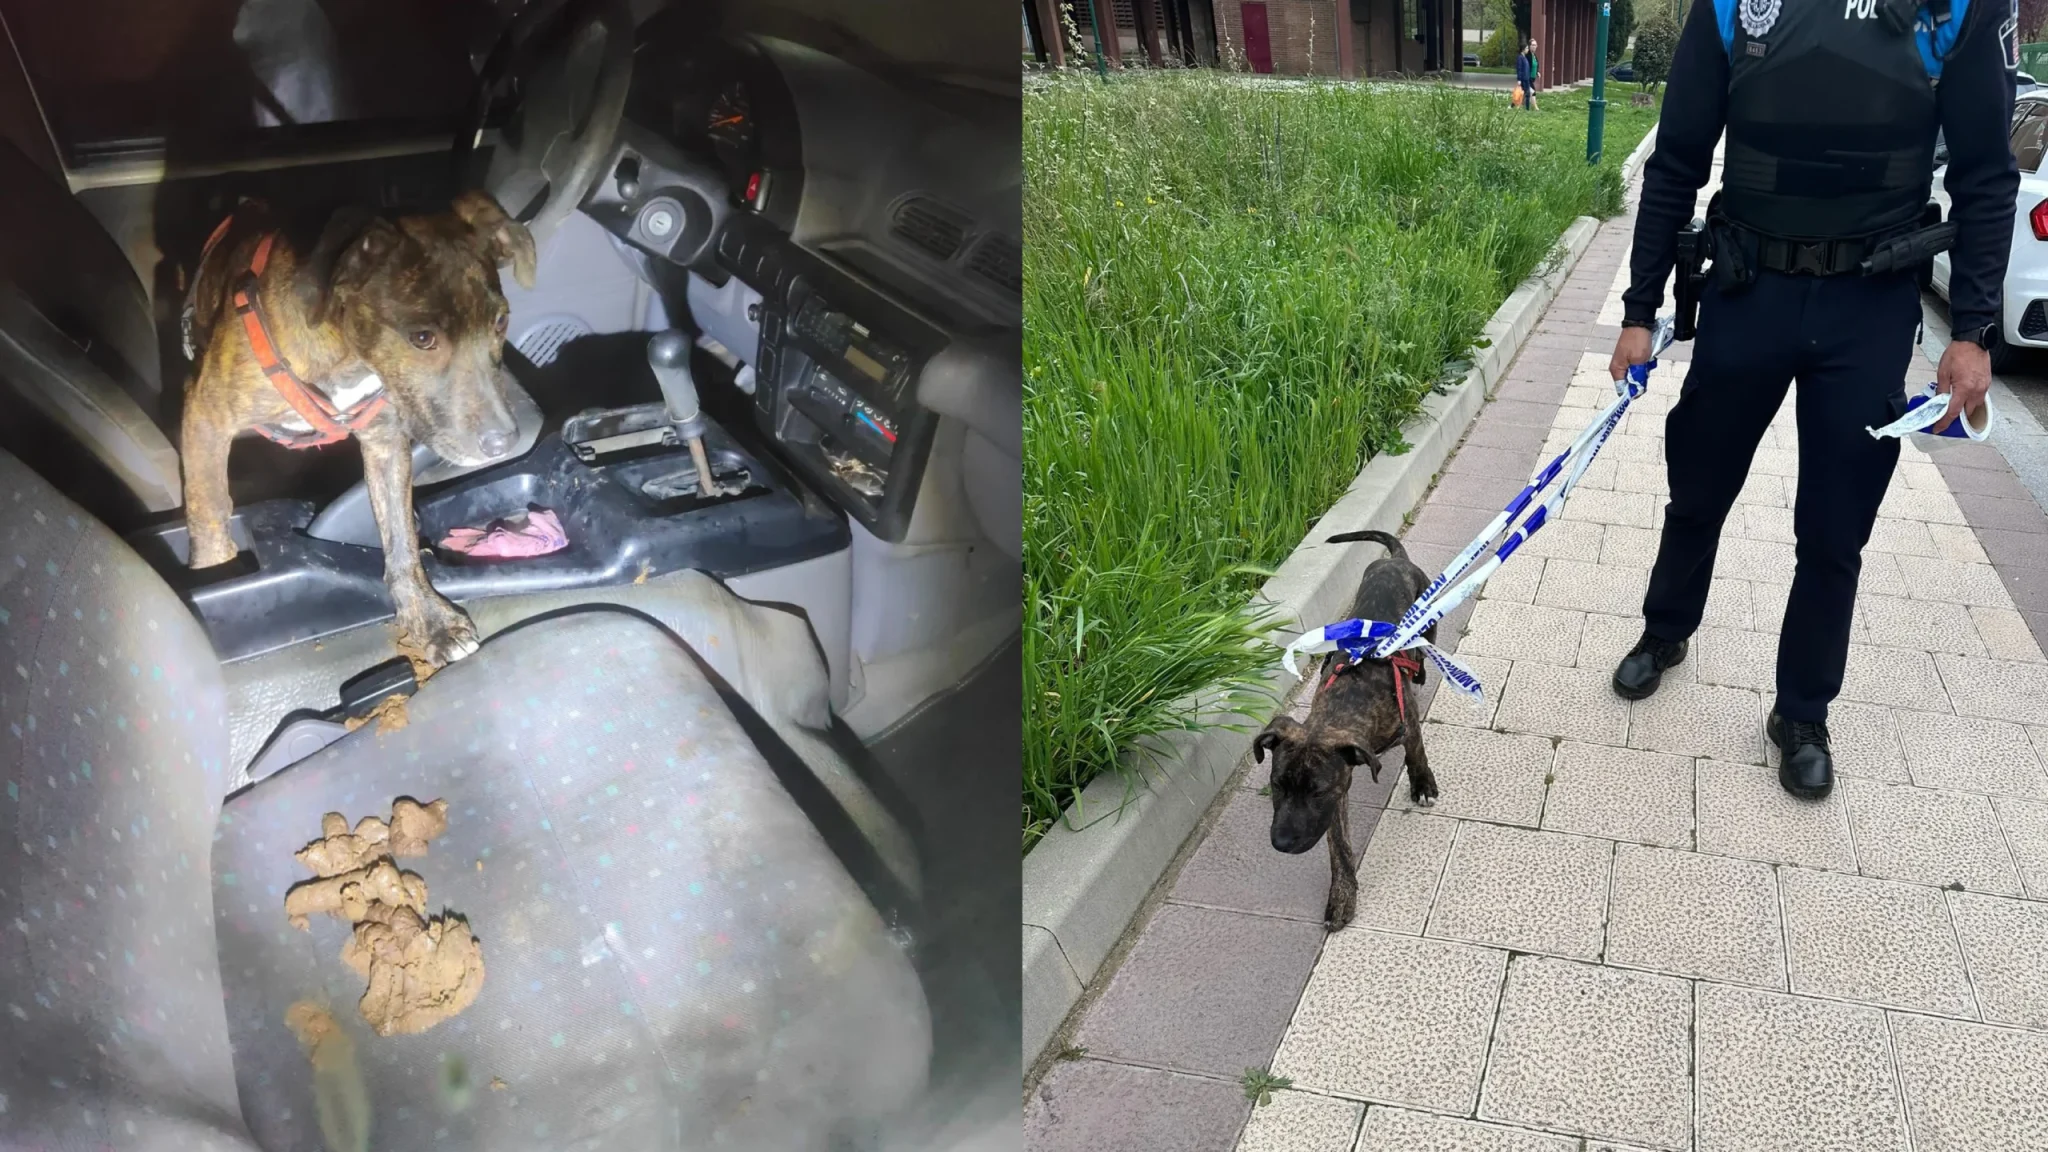 La Policía Local de Valladolid rescata a un perro que se encontraba encerrado en un coche en condiciones deplorables